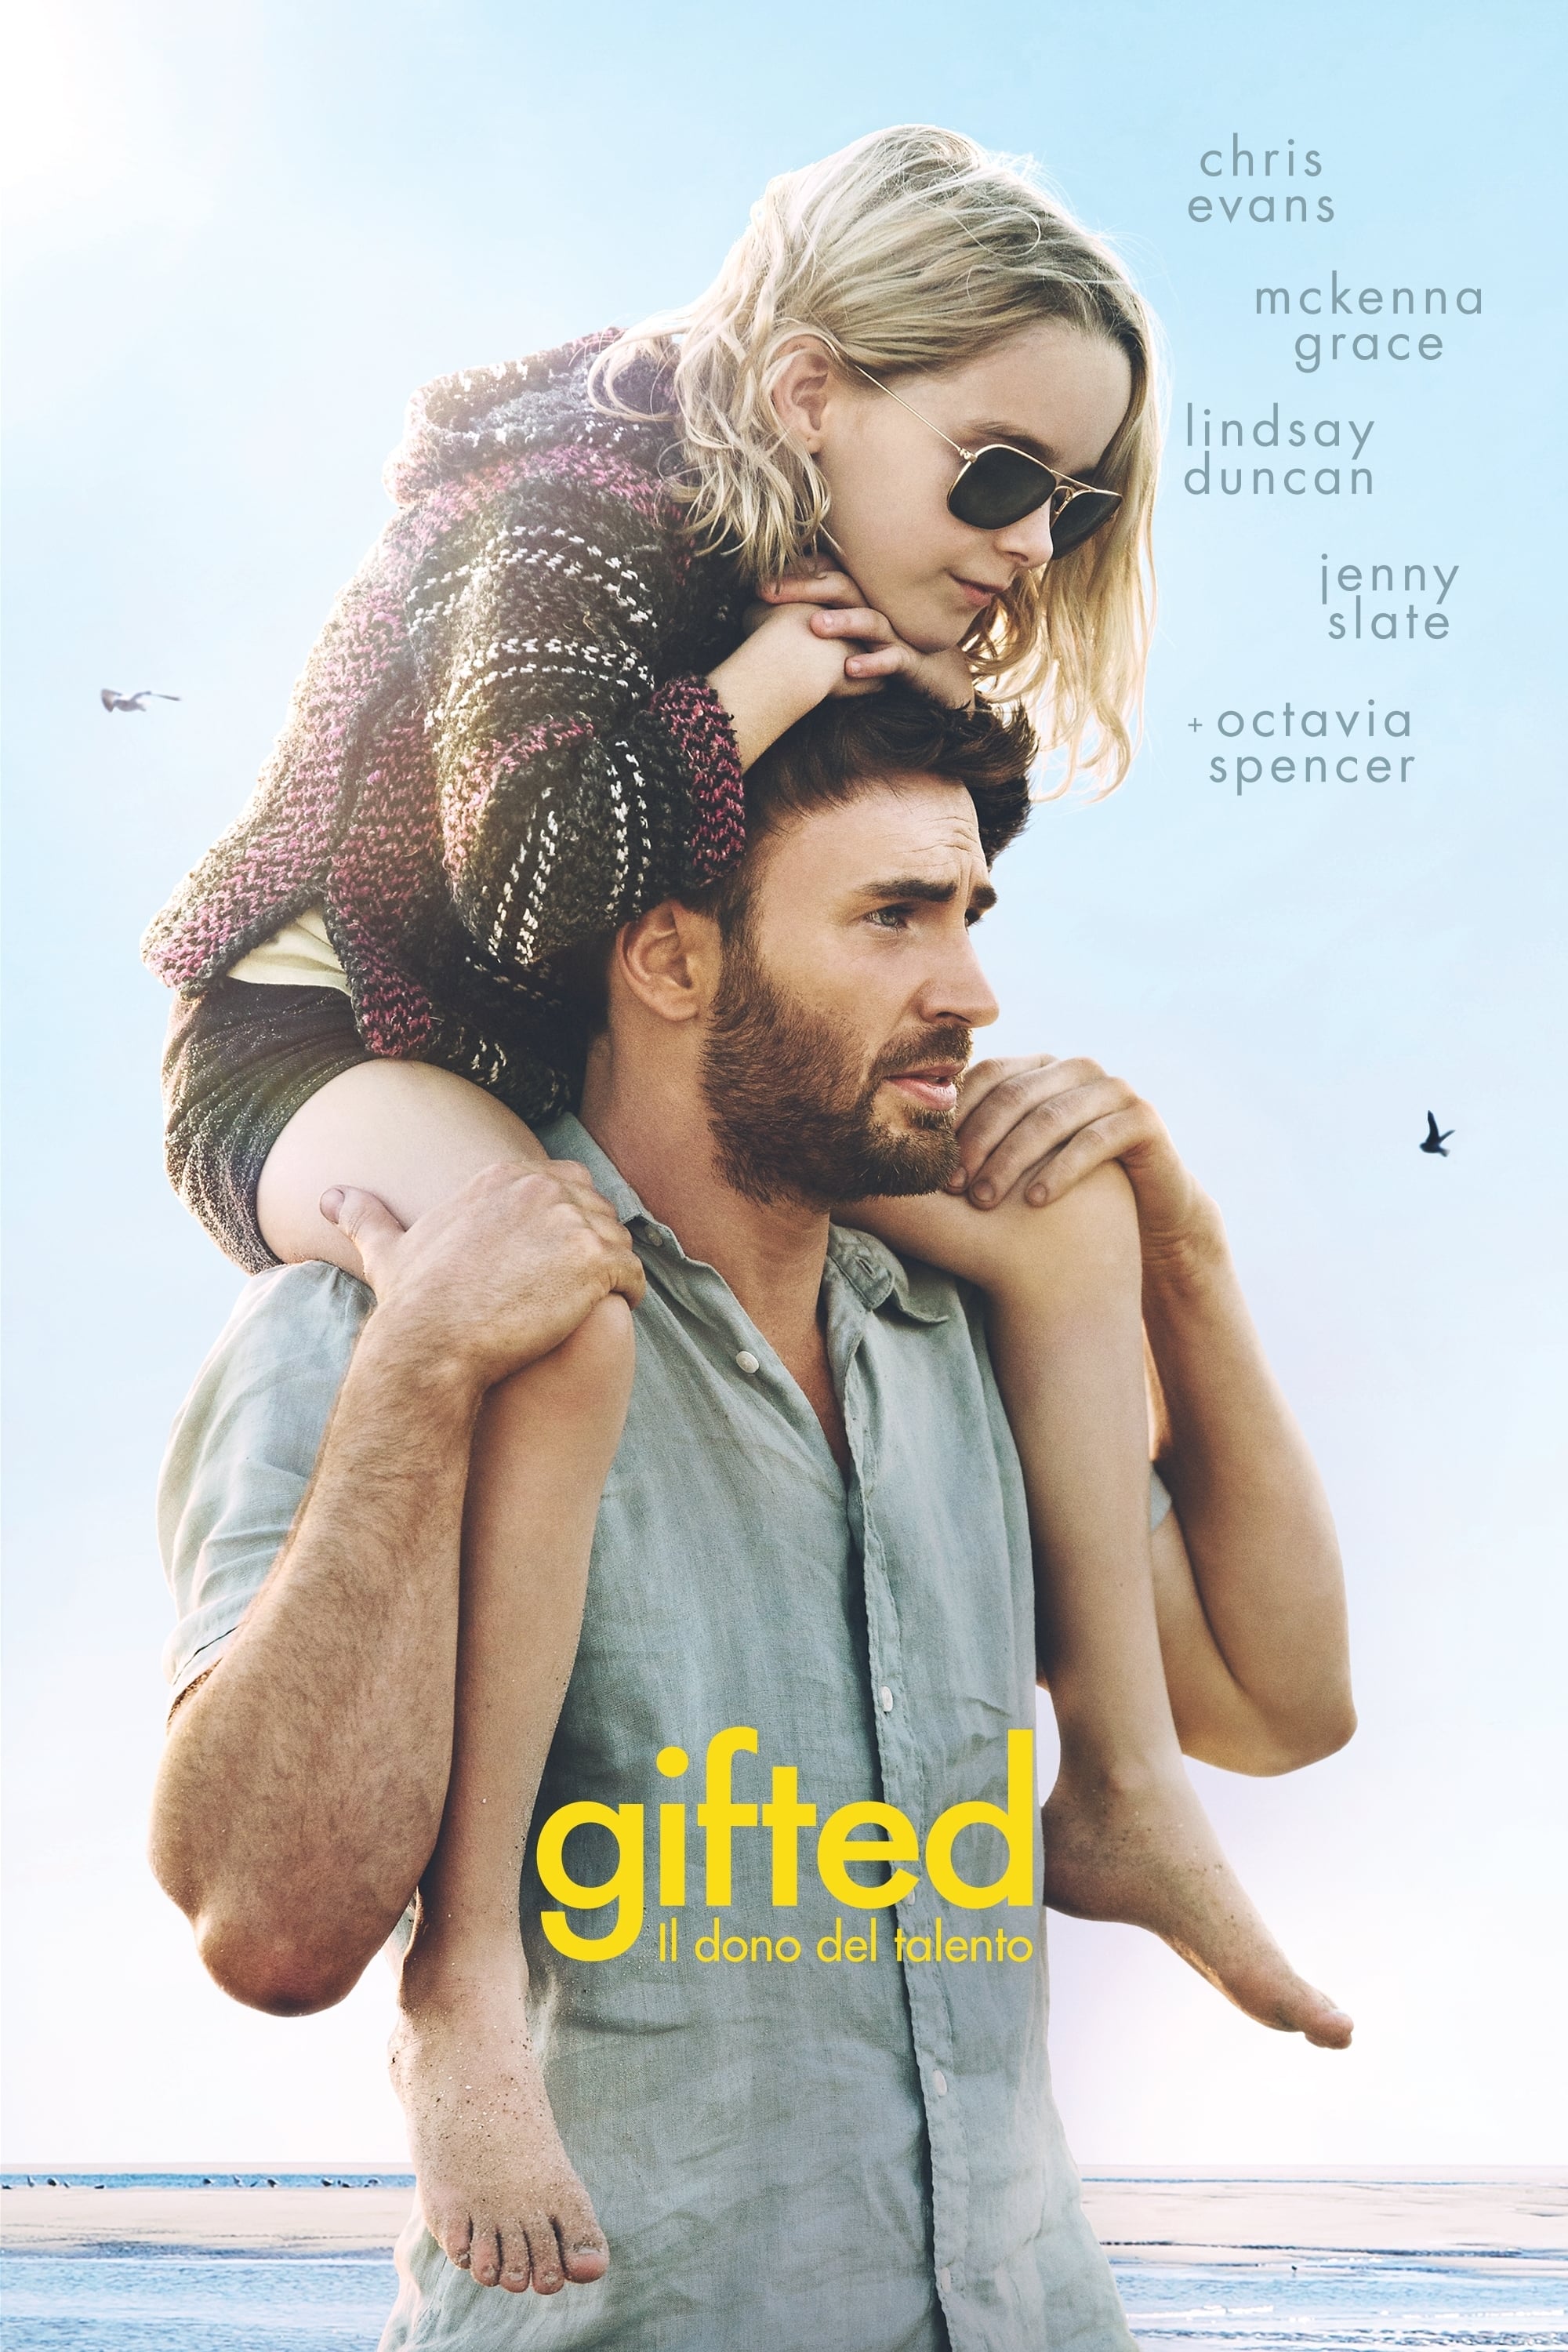 Gifted - Il dono del talento film